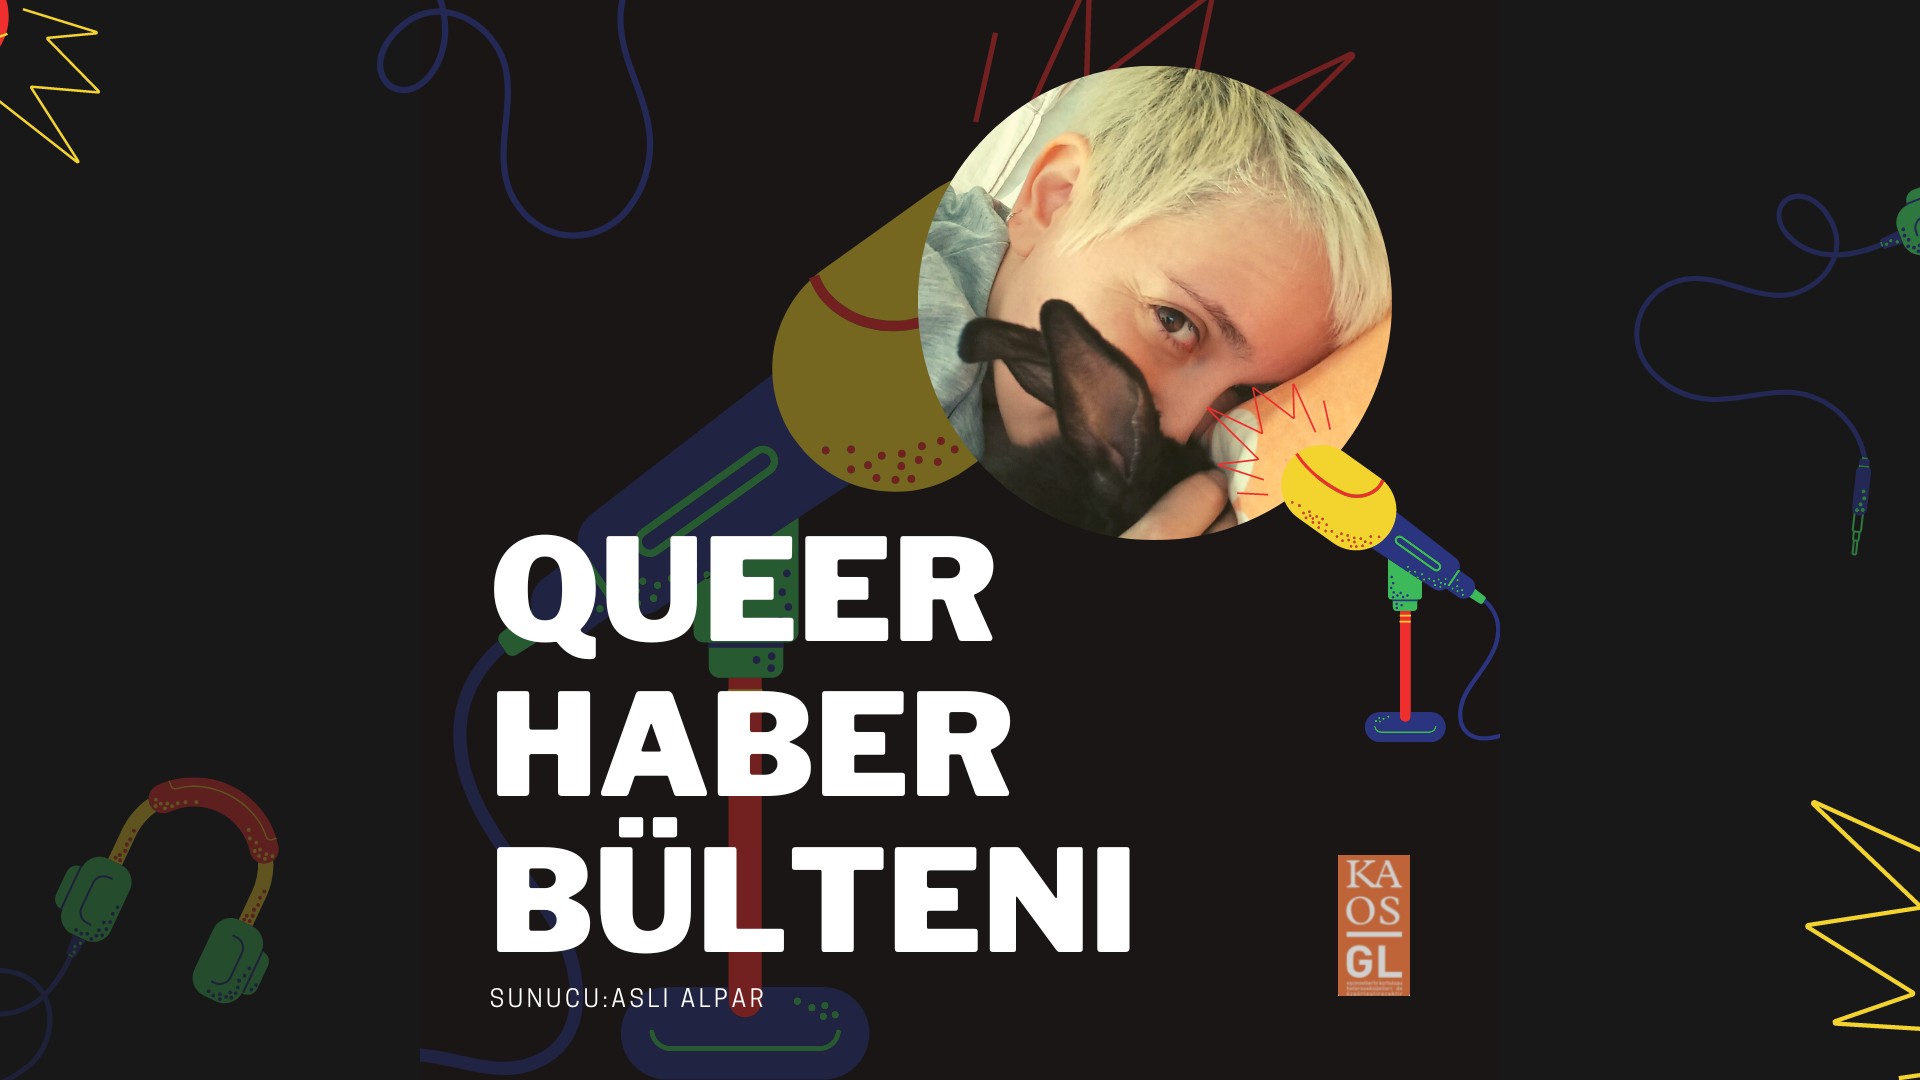 Podcast: Temmuz 2022 Queer Haber Bülteni yayında! Kaos GL - LGBTİ+ Haber Portalı